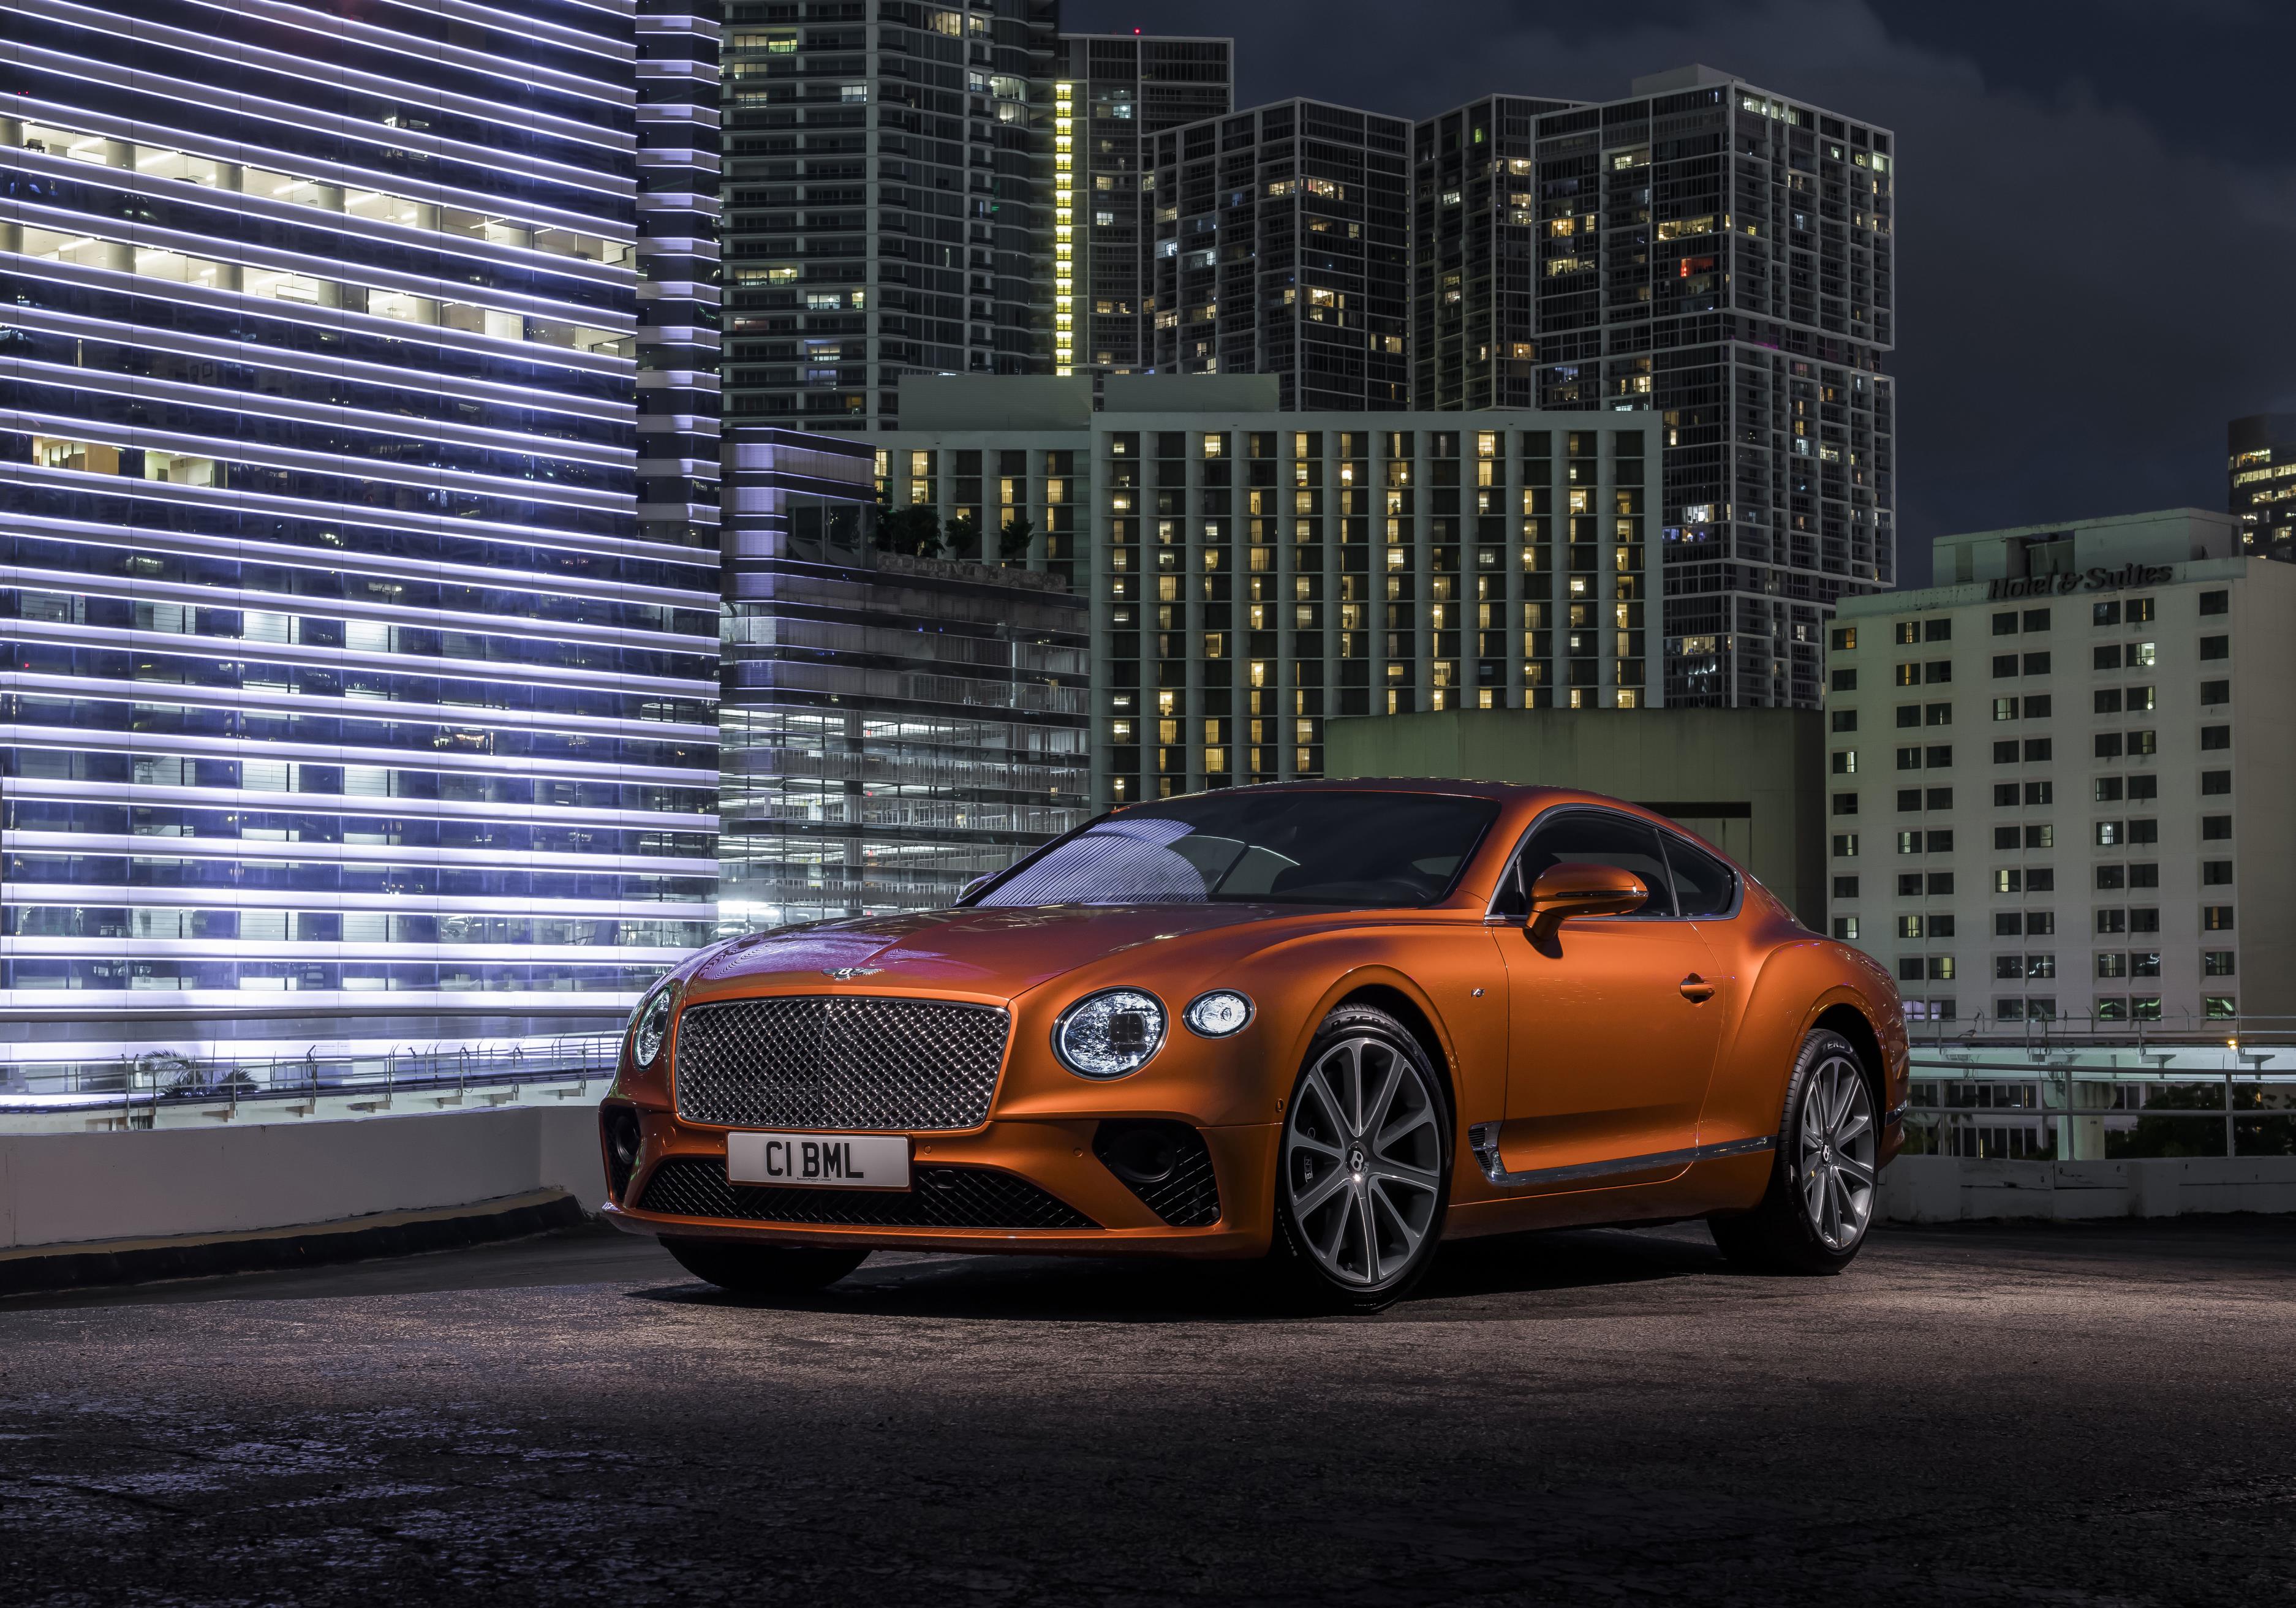 Bentley сосредоточится на рынке США с этими моделями, поставки ожидаются в третьем квартале текущего для клиентов из США и в других регионов - в 1 квартале 2020 года.